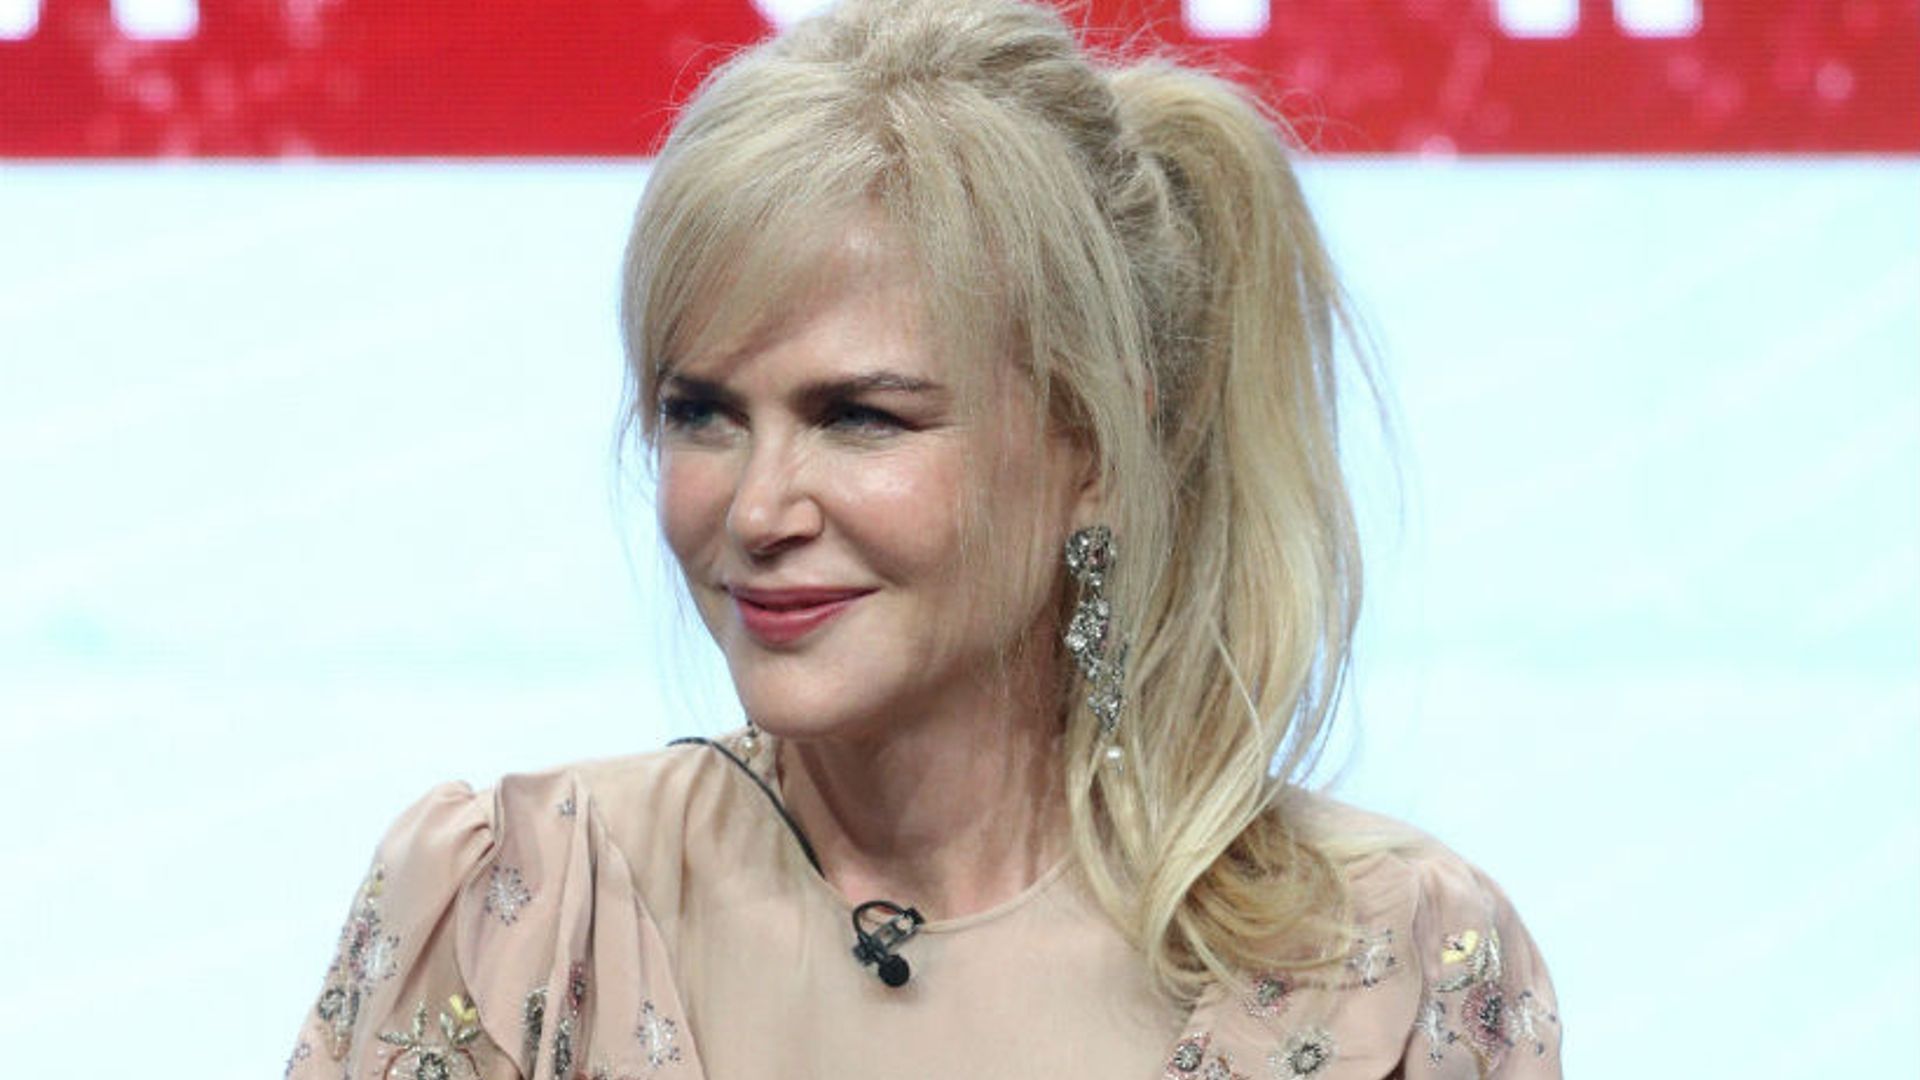 Nicole Kidman turns heads in LA in chic floral ruffle dress